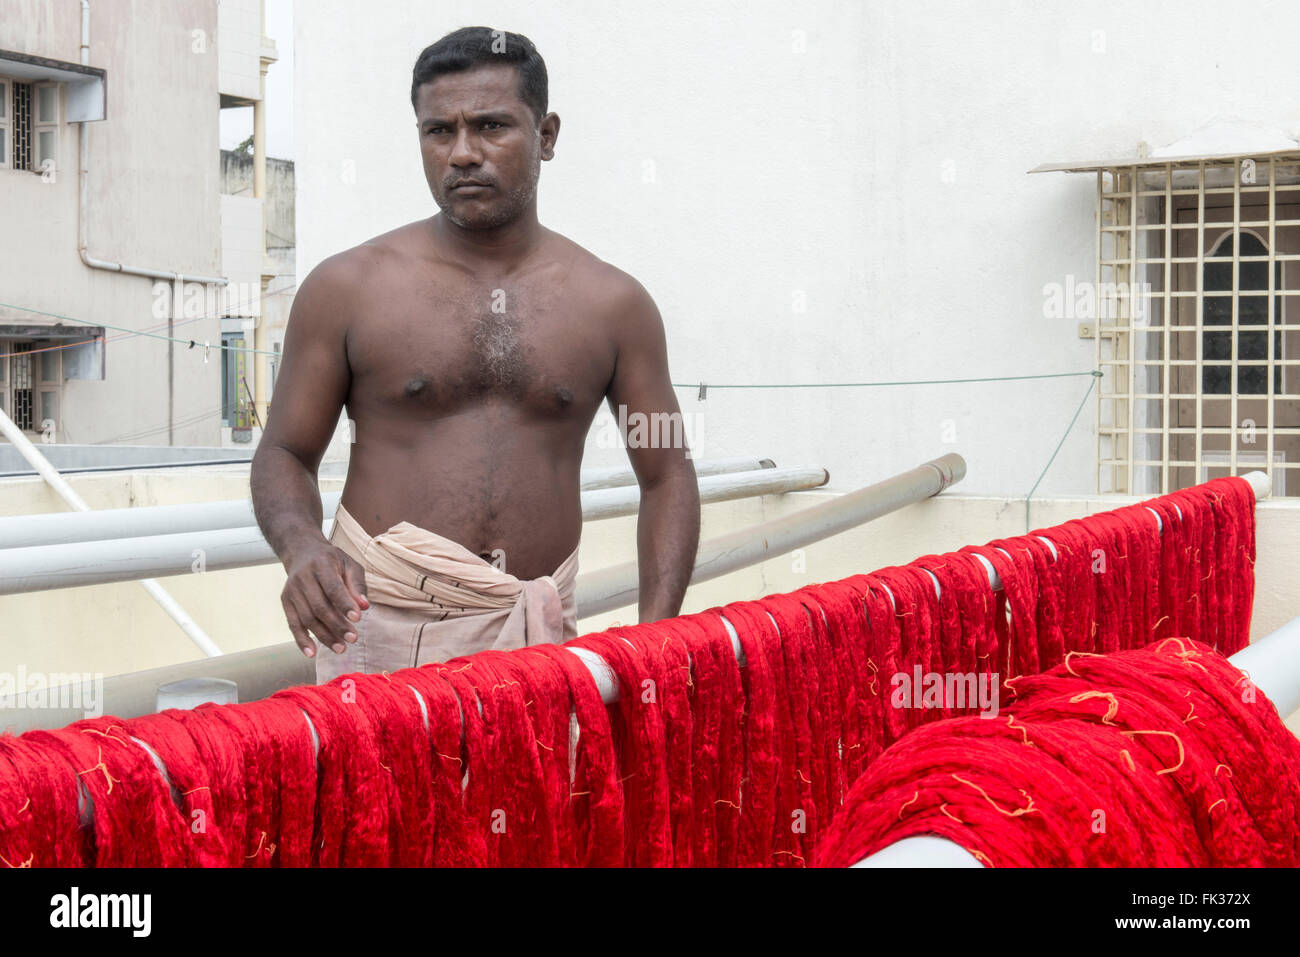 Dyer de soie sur toit, Kanchipuram Banque D'Images